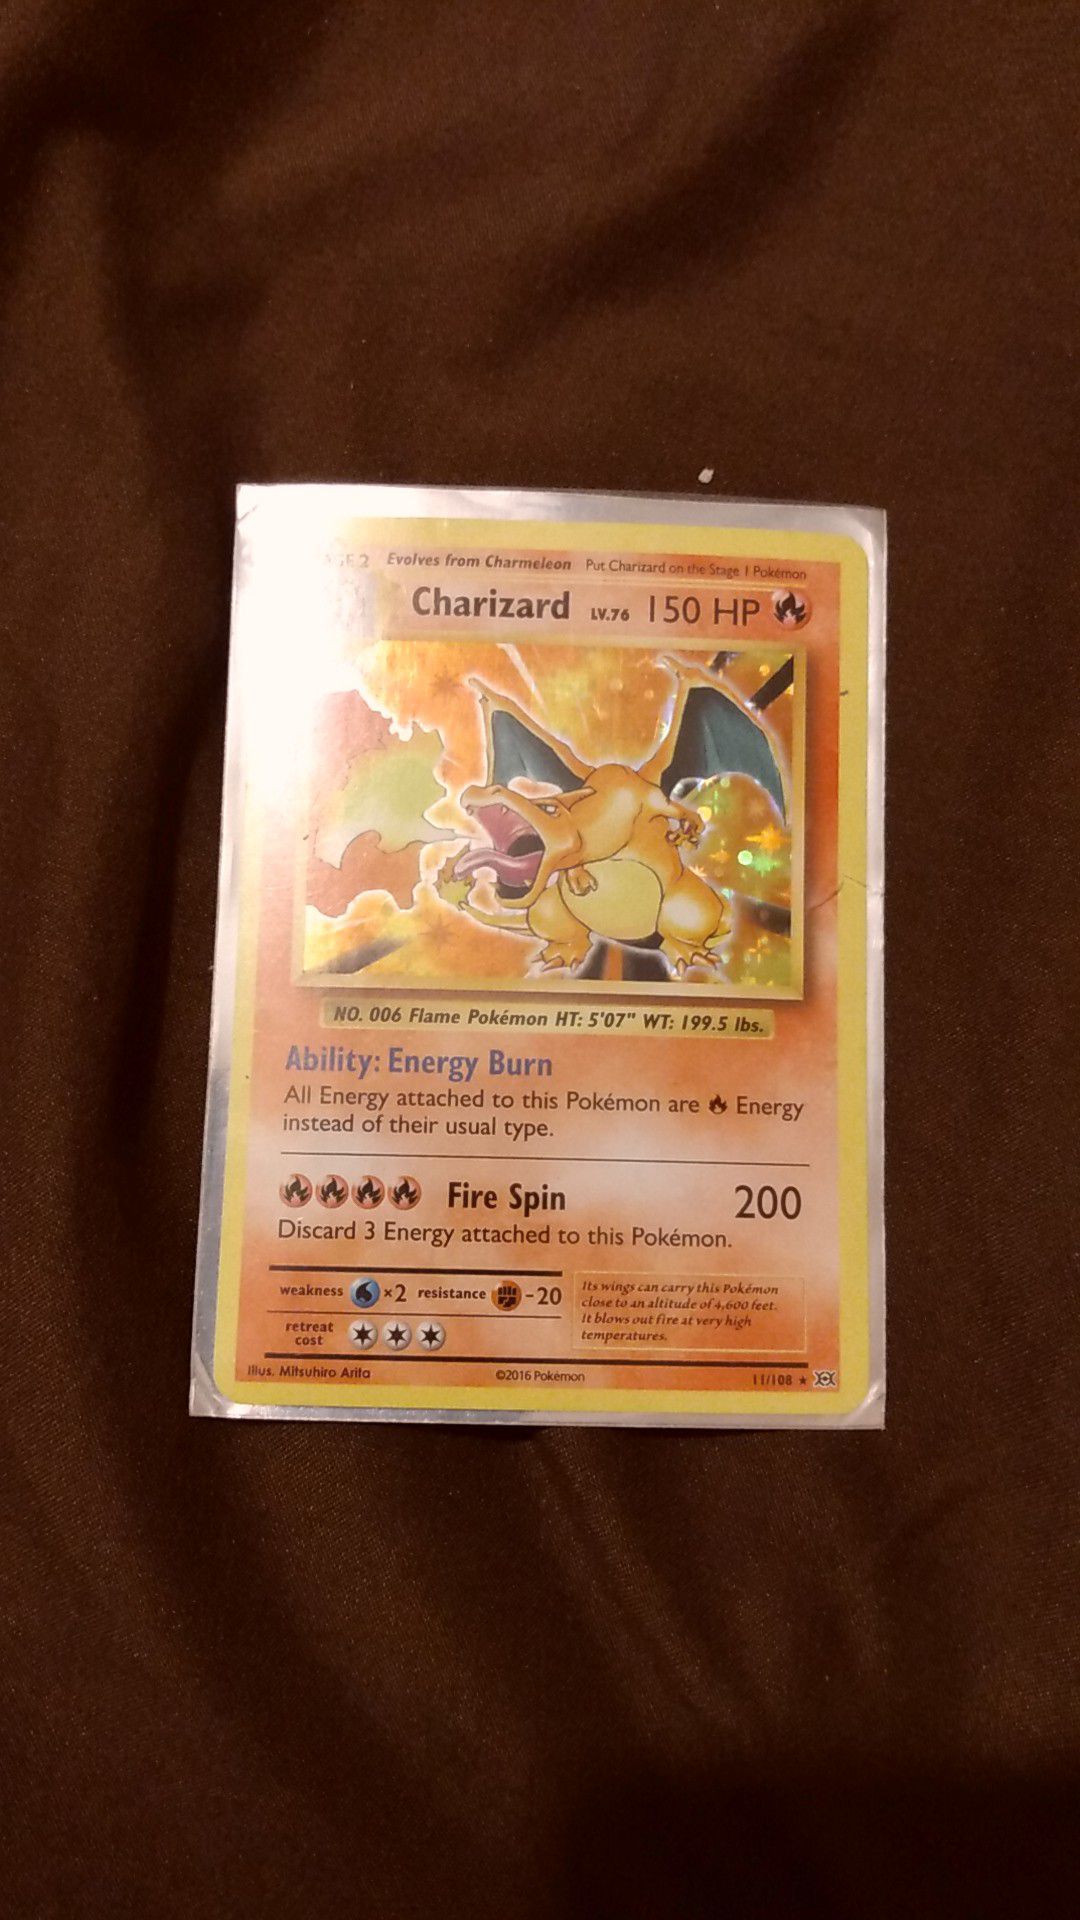 2016 Charizard Pokemon card